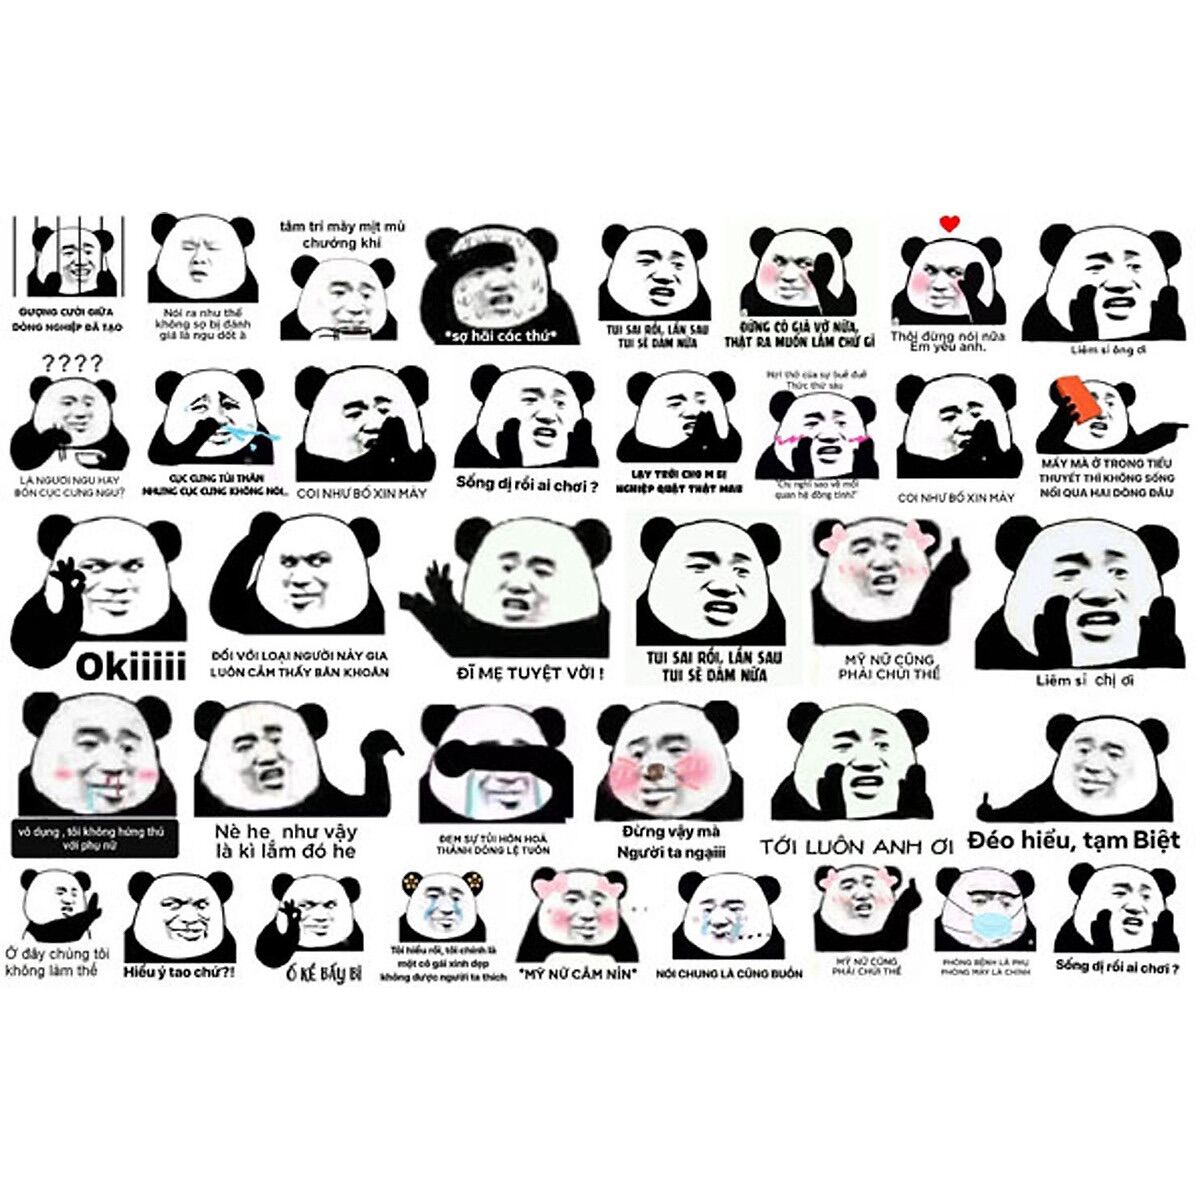 Hình Dán Gấu Trúc Bựa Meme 30-60 Ảnh Khác Nhau/ Combo Sticker Gấu Trúc Bựa  Meme | Lazada.Vn